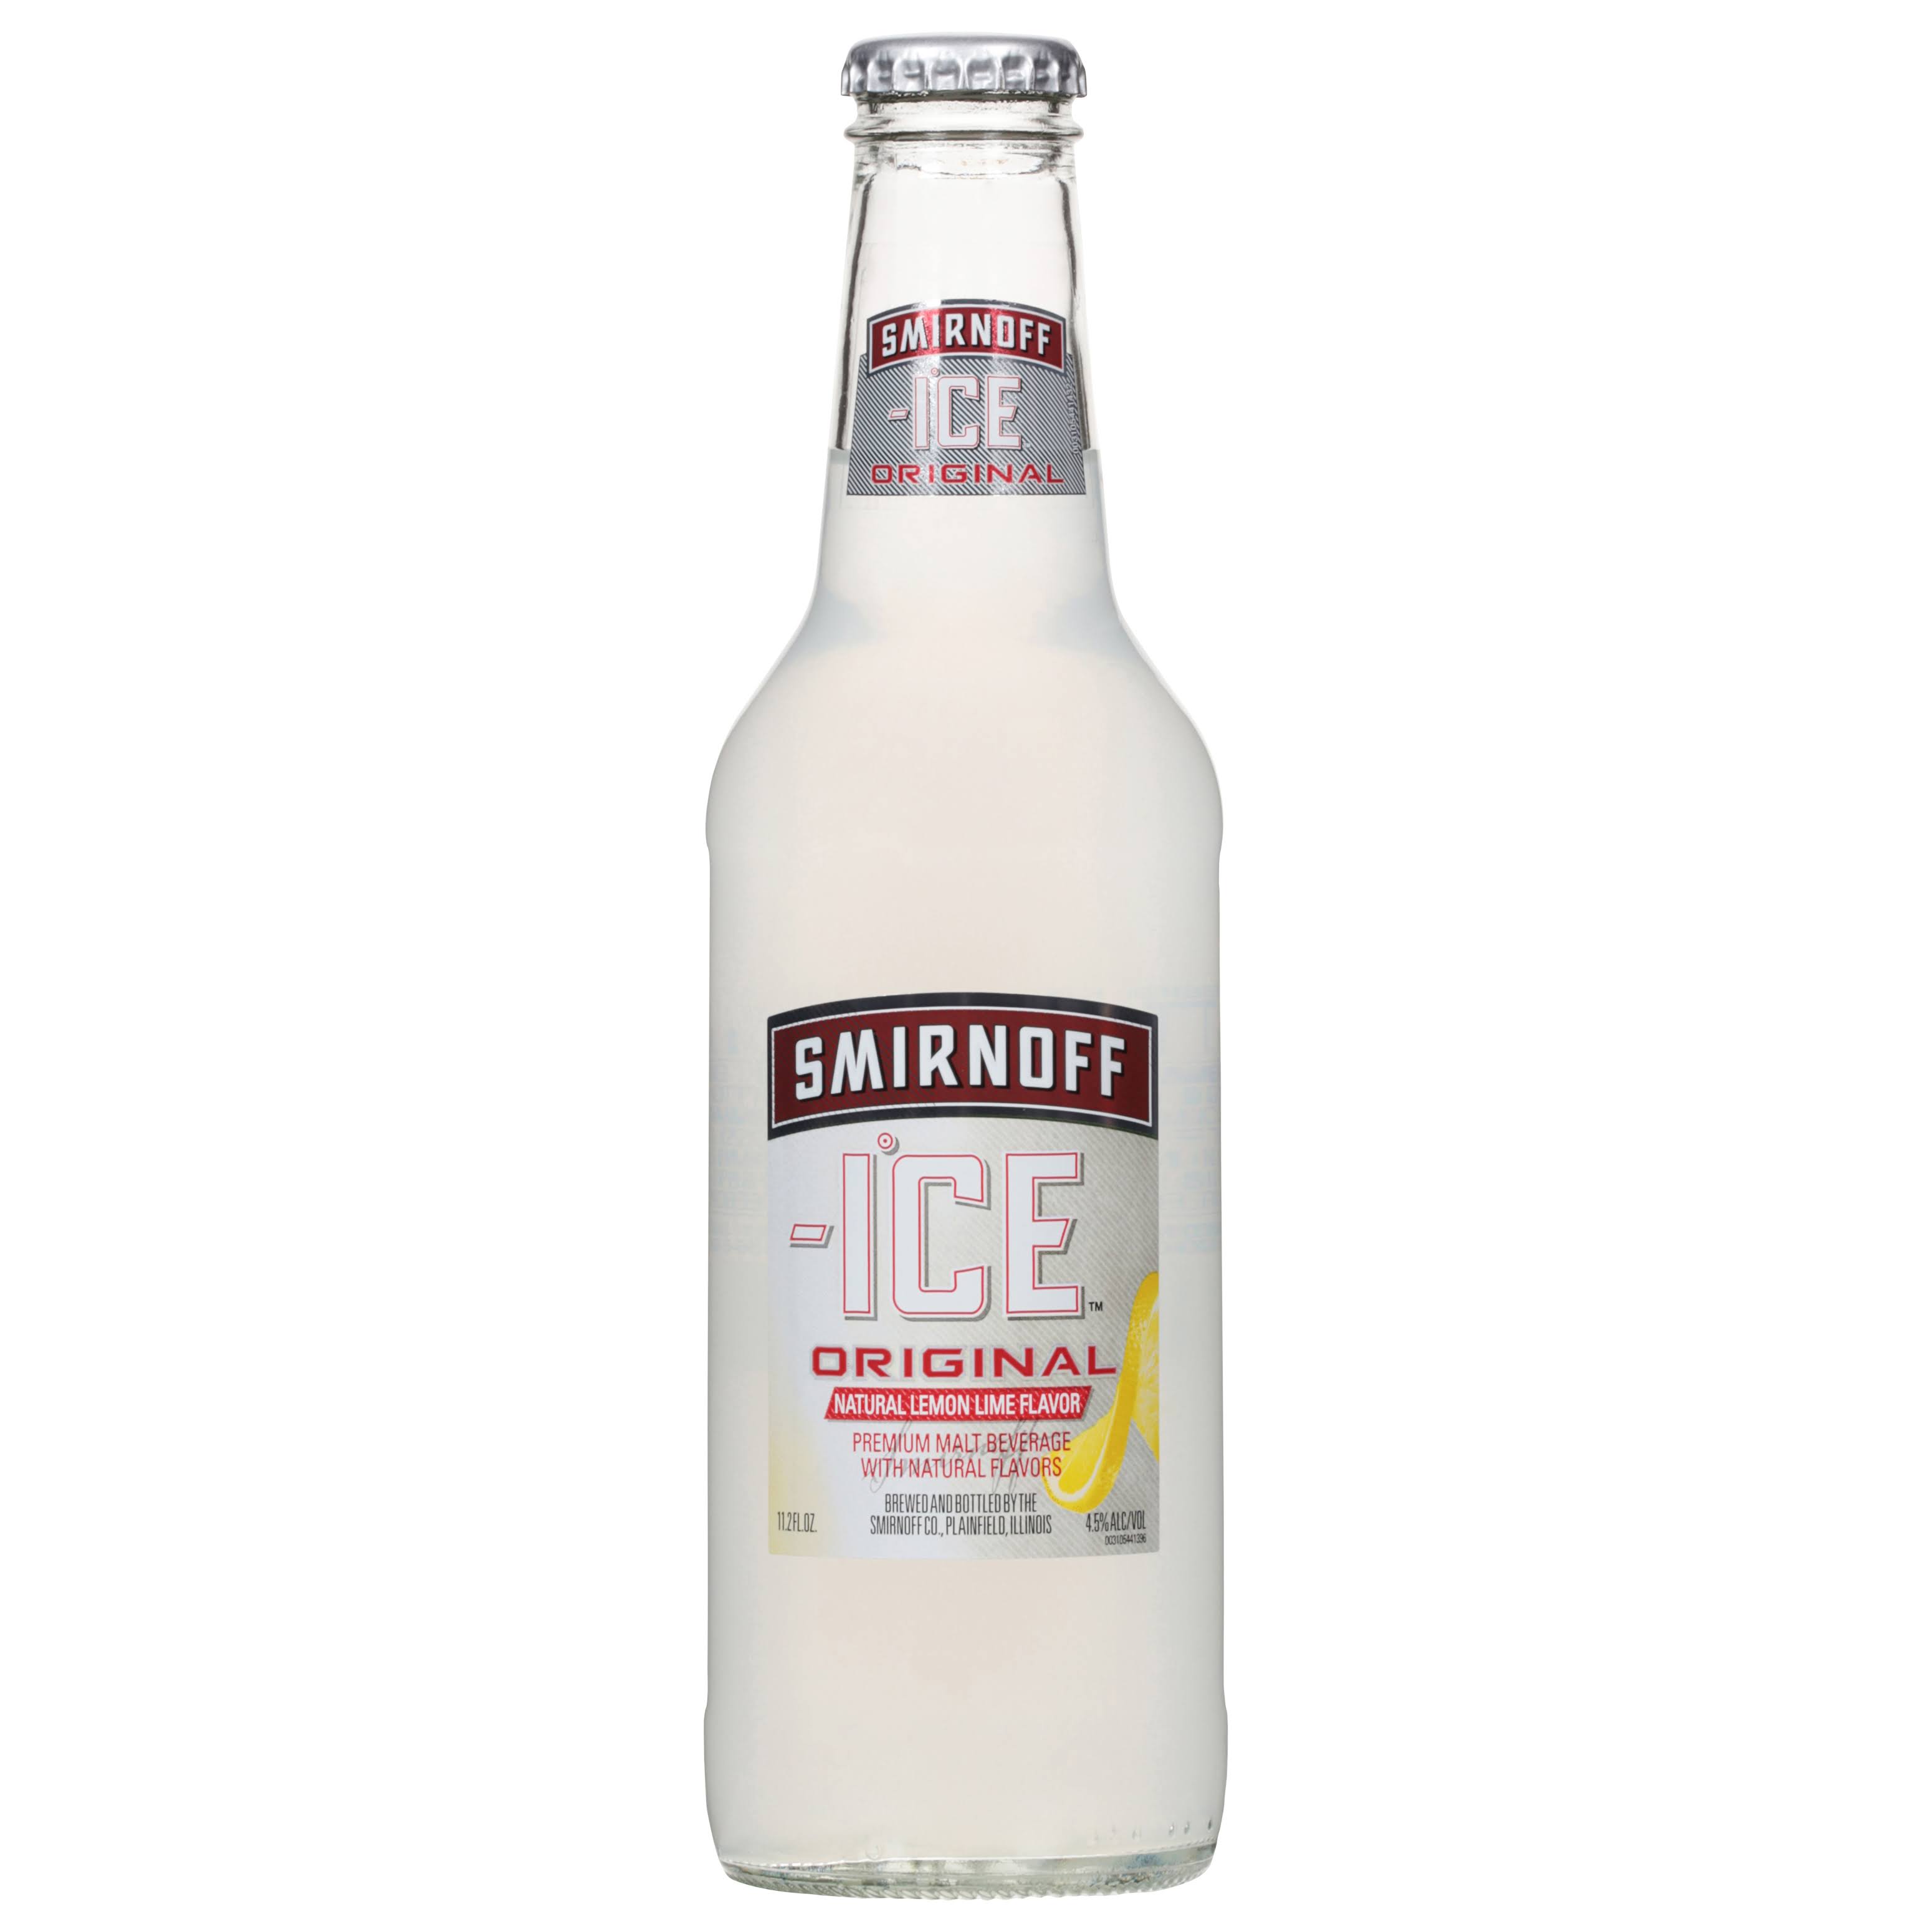 Smirnoff Ice Malt Beverage, Original - 11.2 fl oz